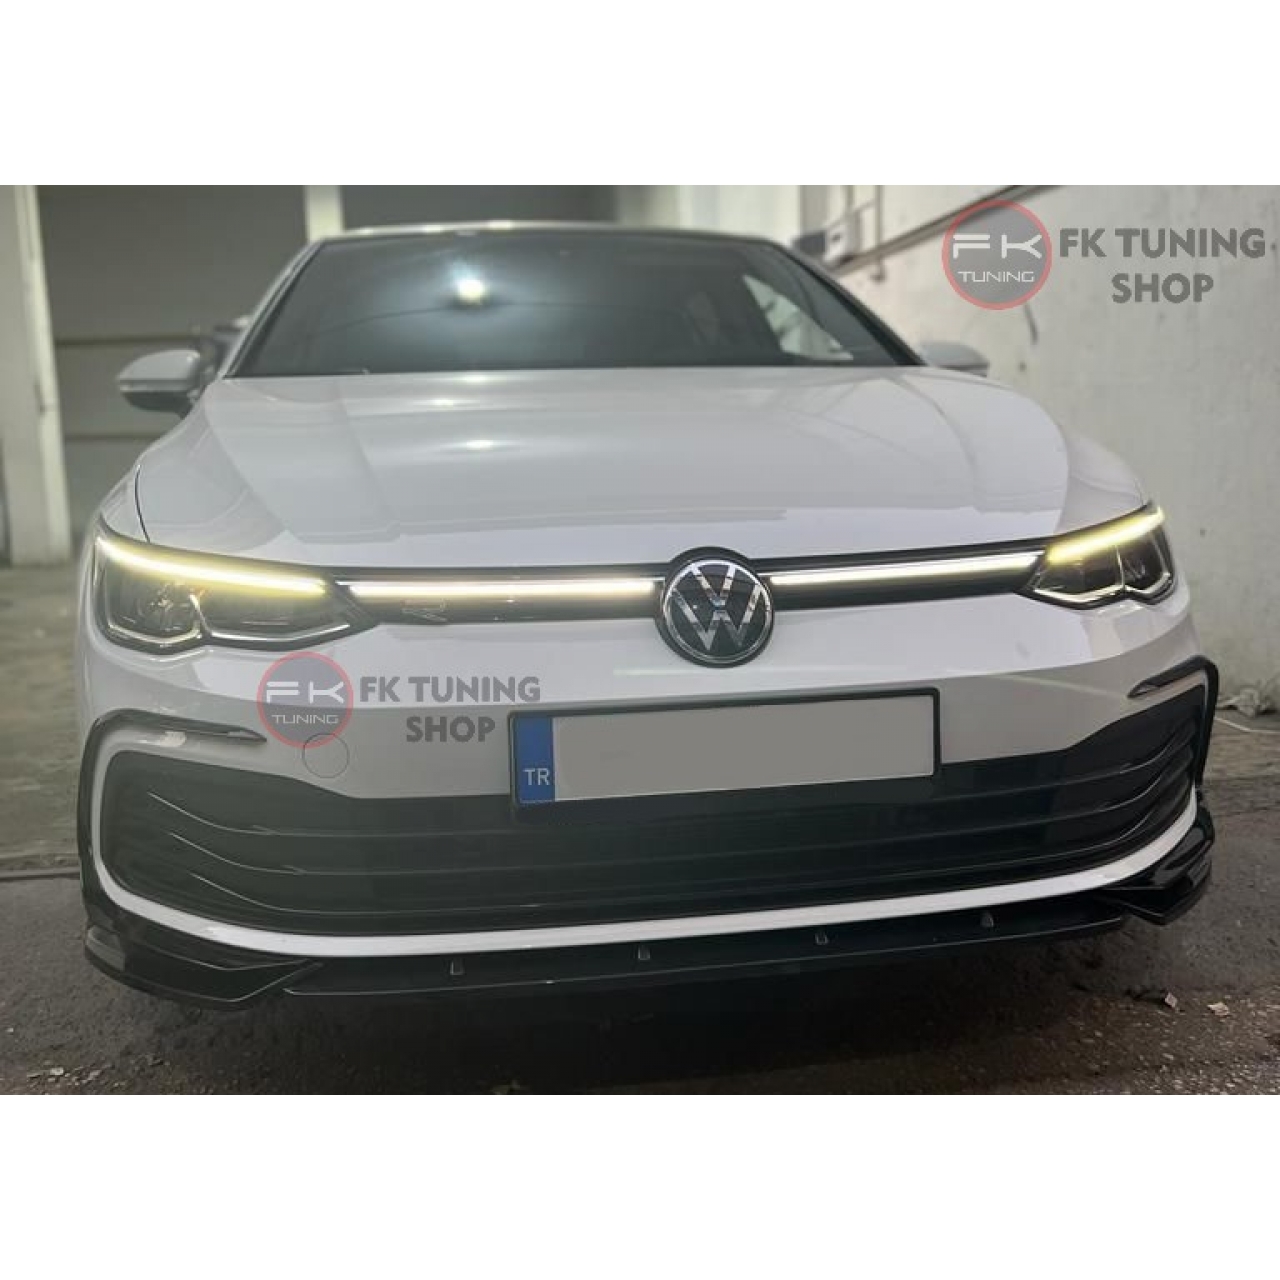 Volkswagen Golf 8 Ön Tampon Eki Lip (pianoblack-yerli plastik) 2020 ve üzeri